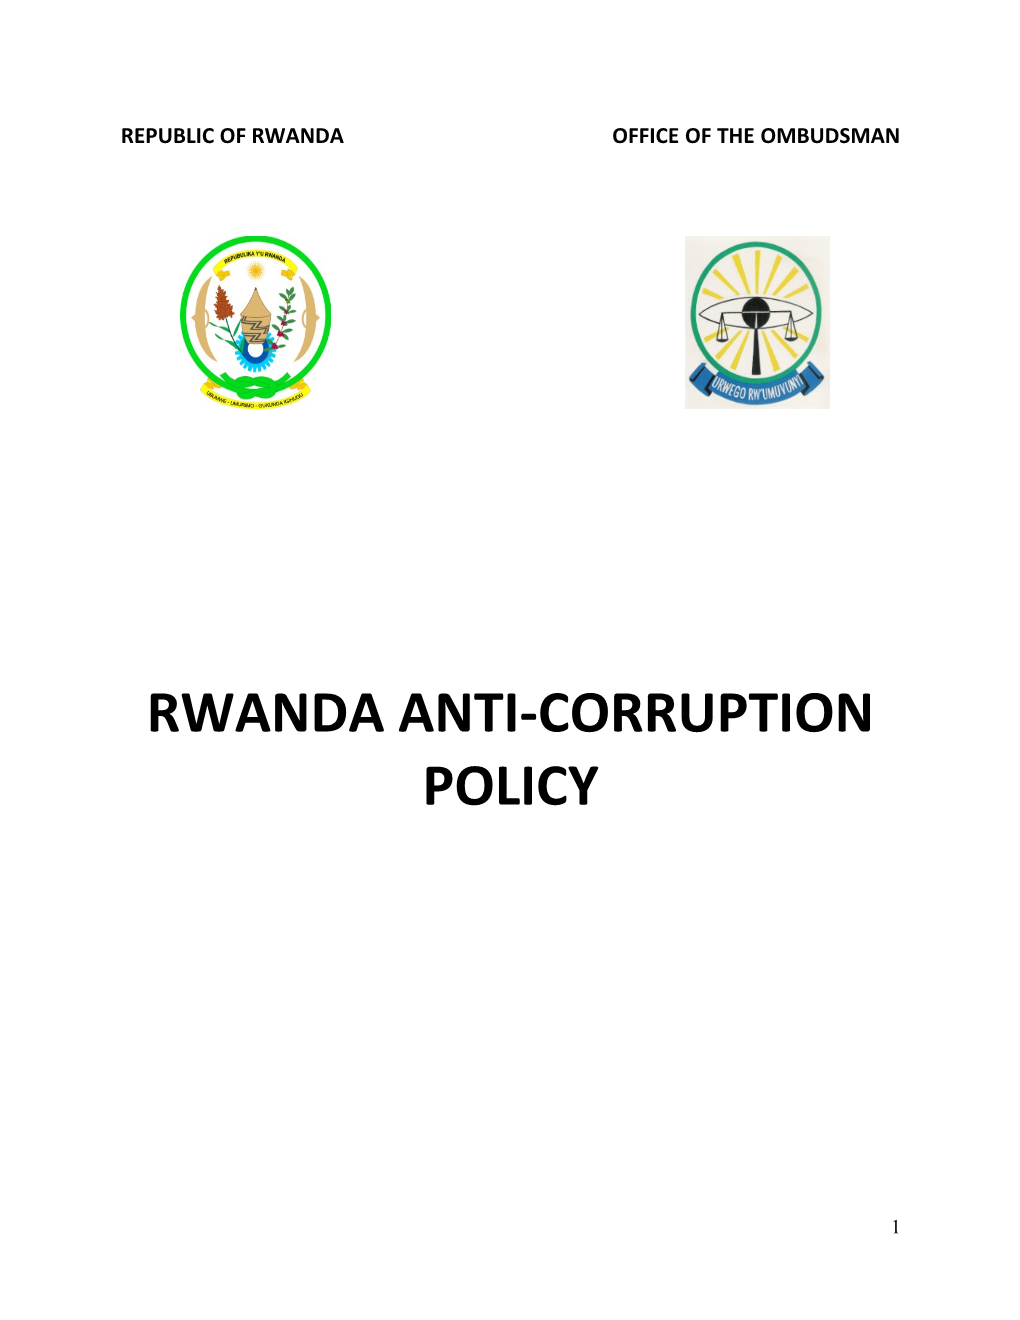 Rwanda Anti-Corruption Policy